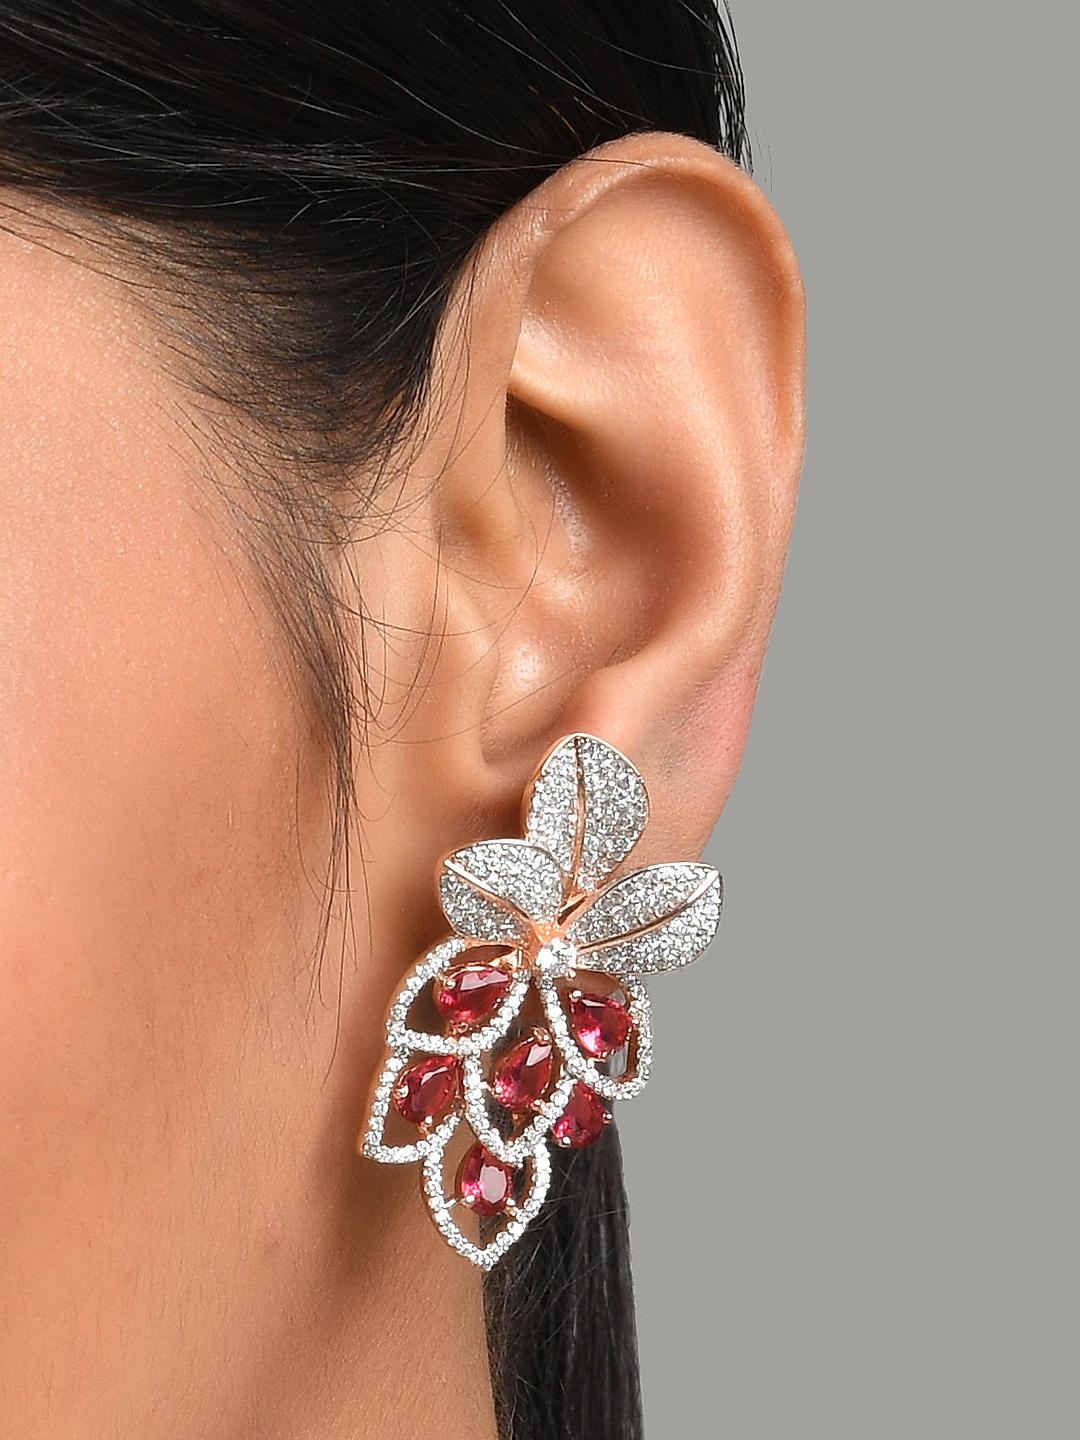 Beautiful American Diamond Indian Jewelry Design Chandbali - Etsy